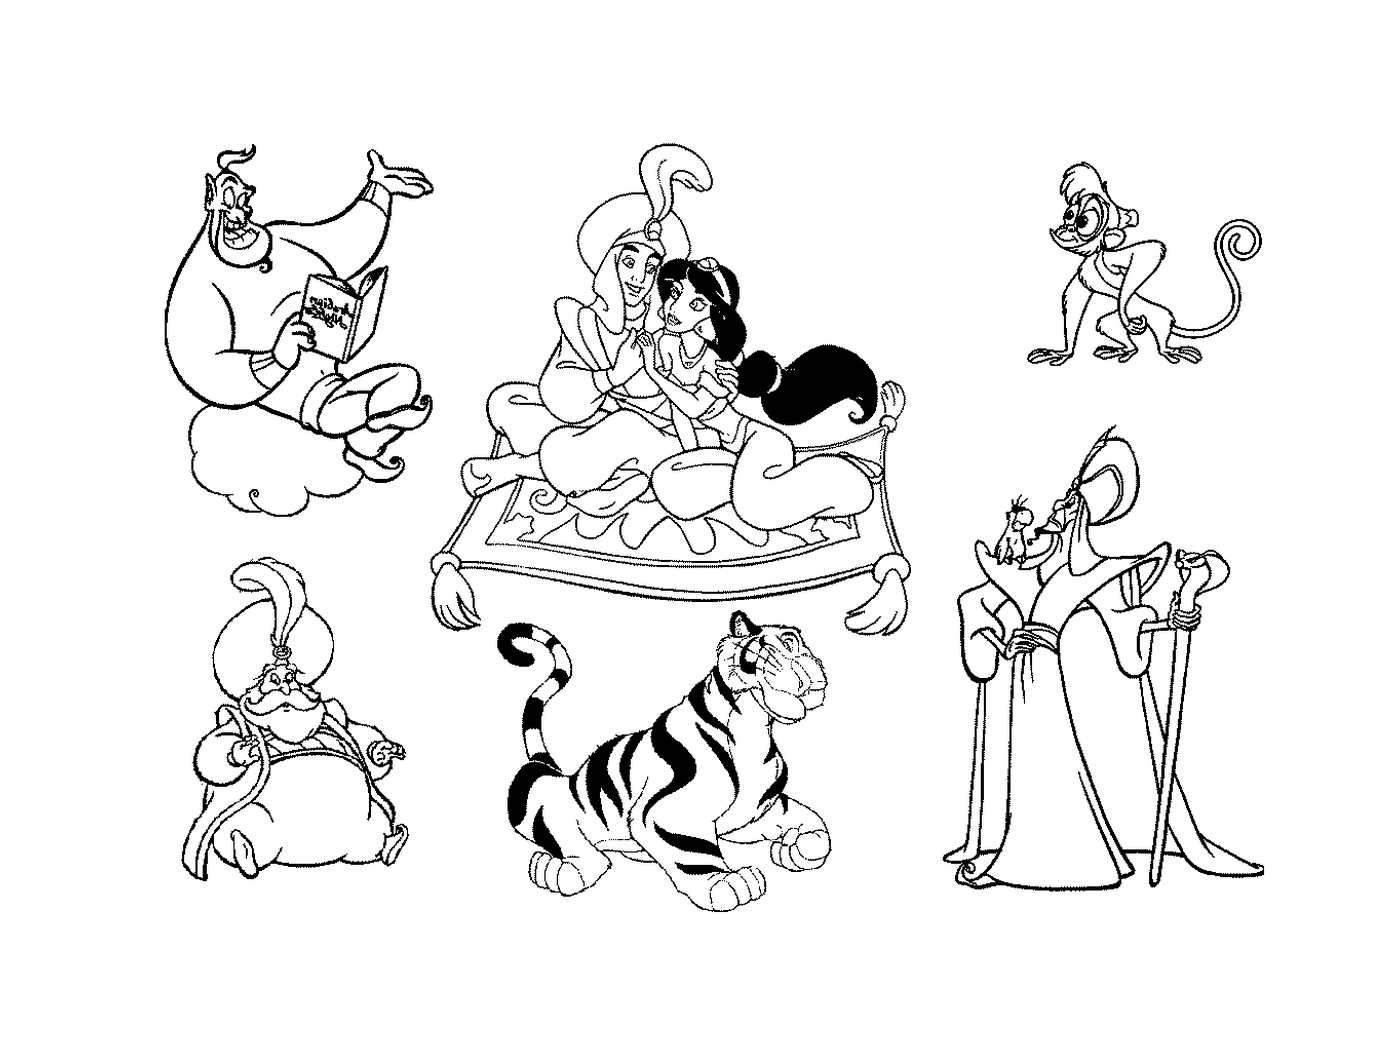   Un groupe de personnages de dessins animés 